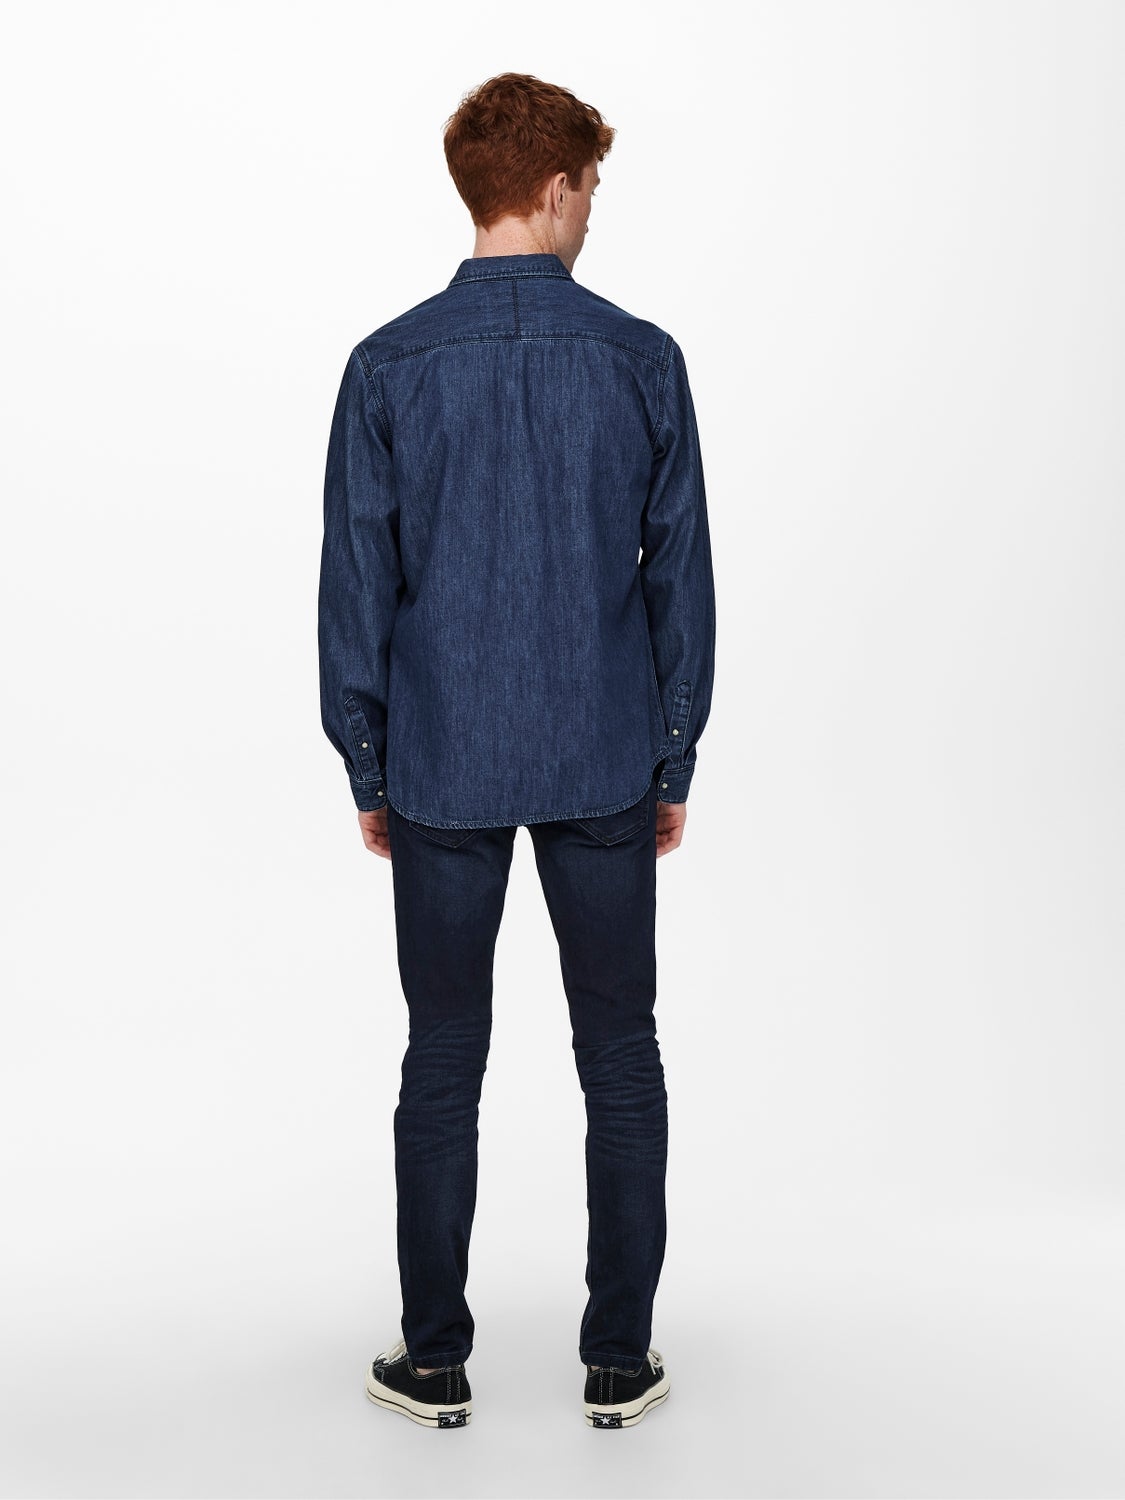 ONLY & SONS Hemd Dunkelblau L Rabatt 57 % HERREN Hemden & T-Shirts Jean 